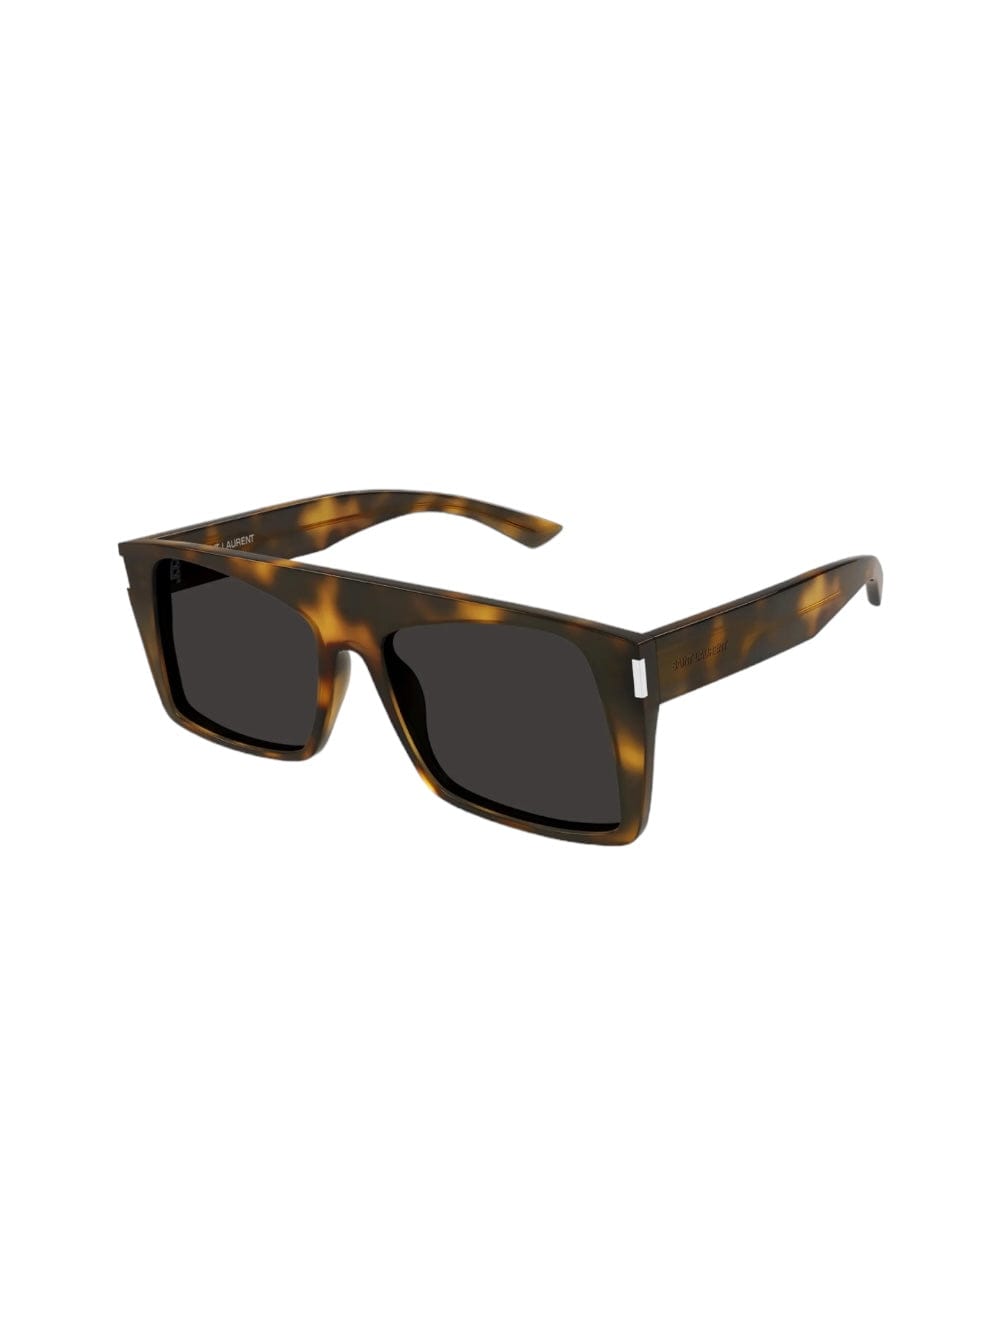 Sl 651 - Vitti Sunglasses